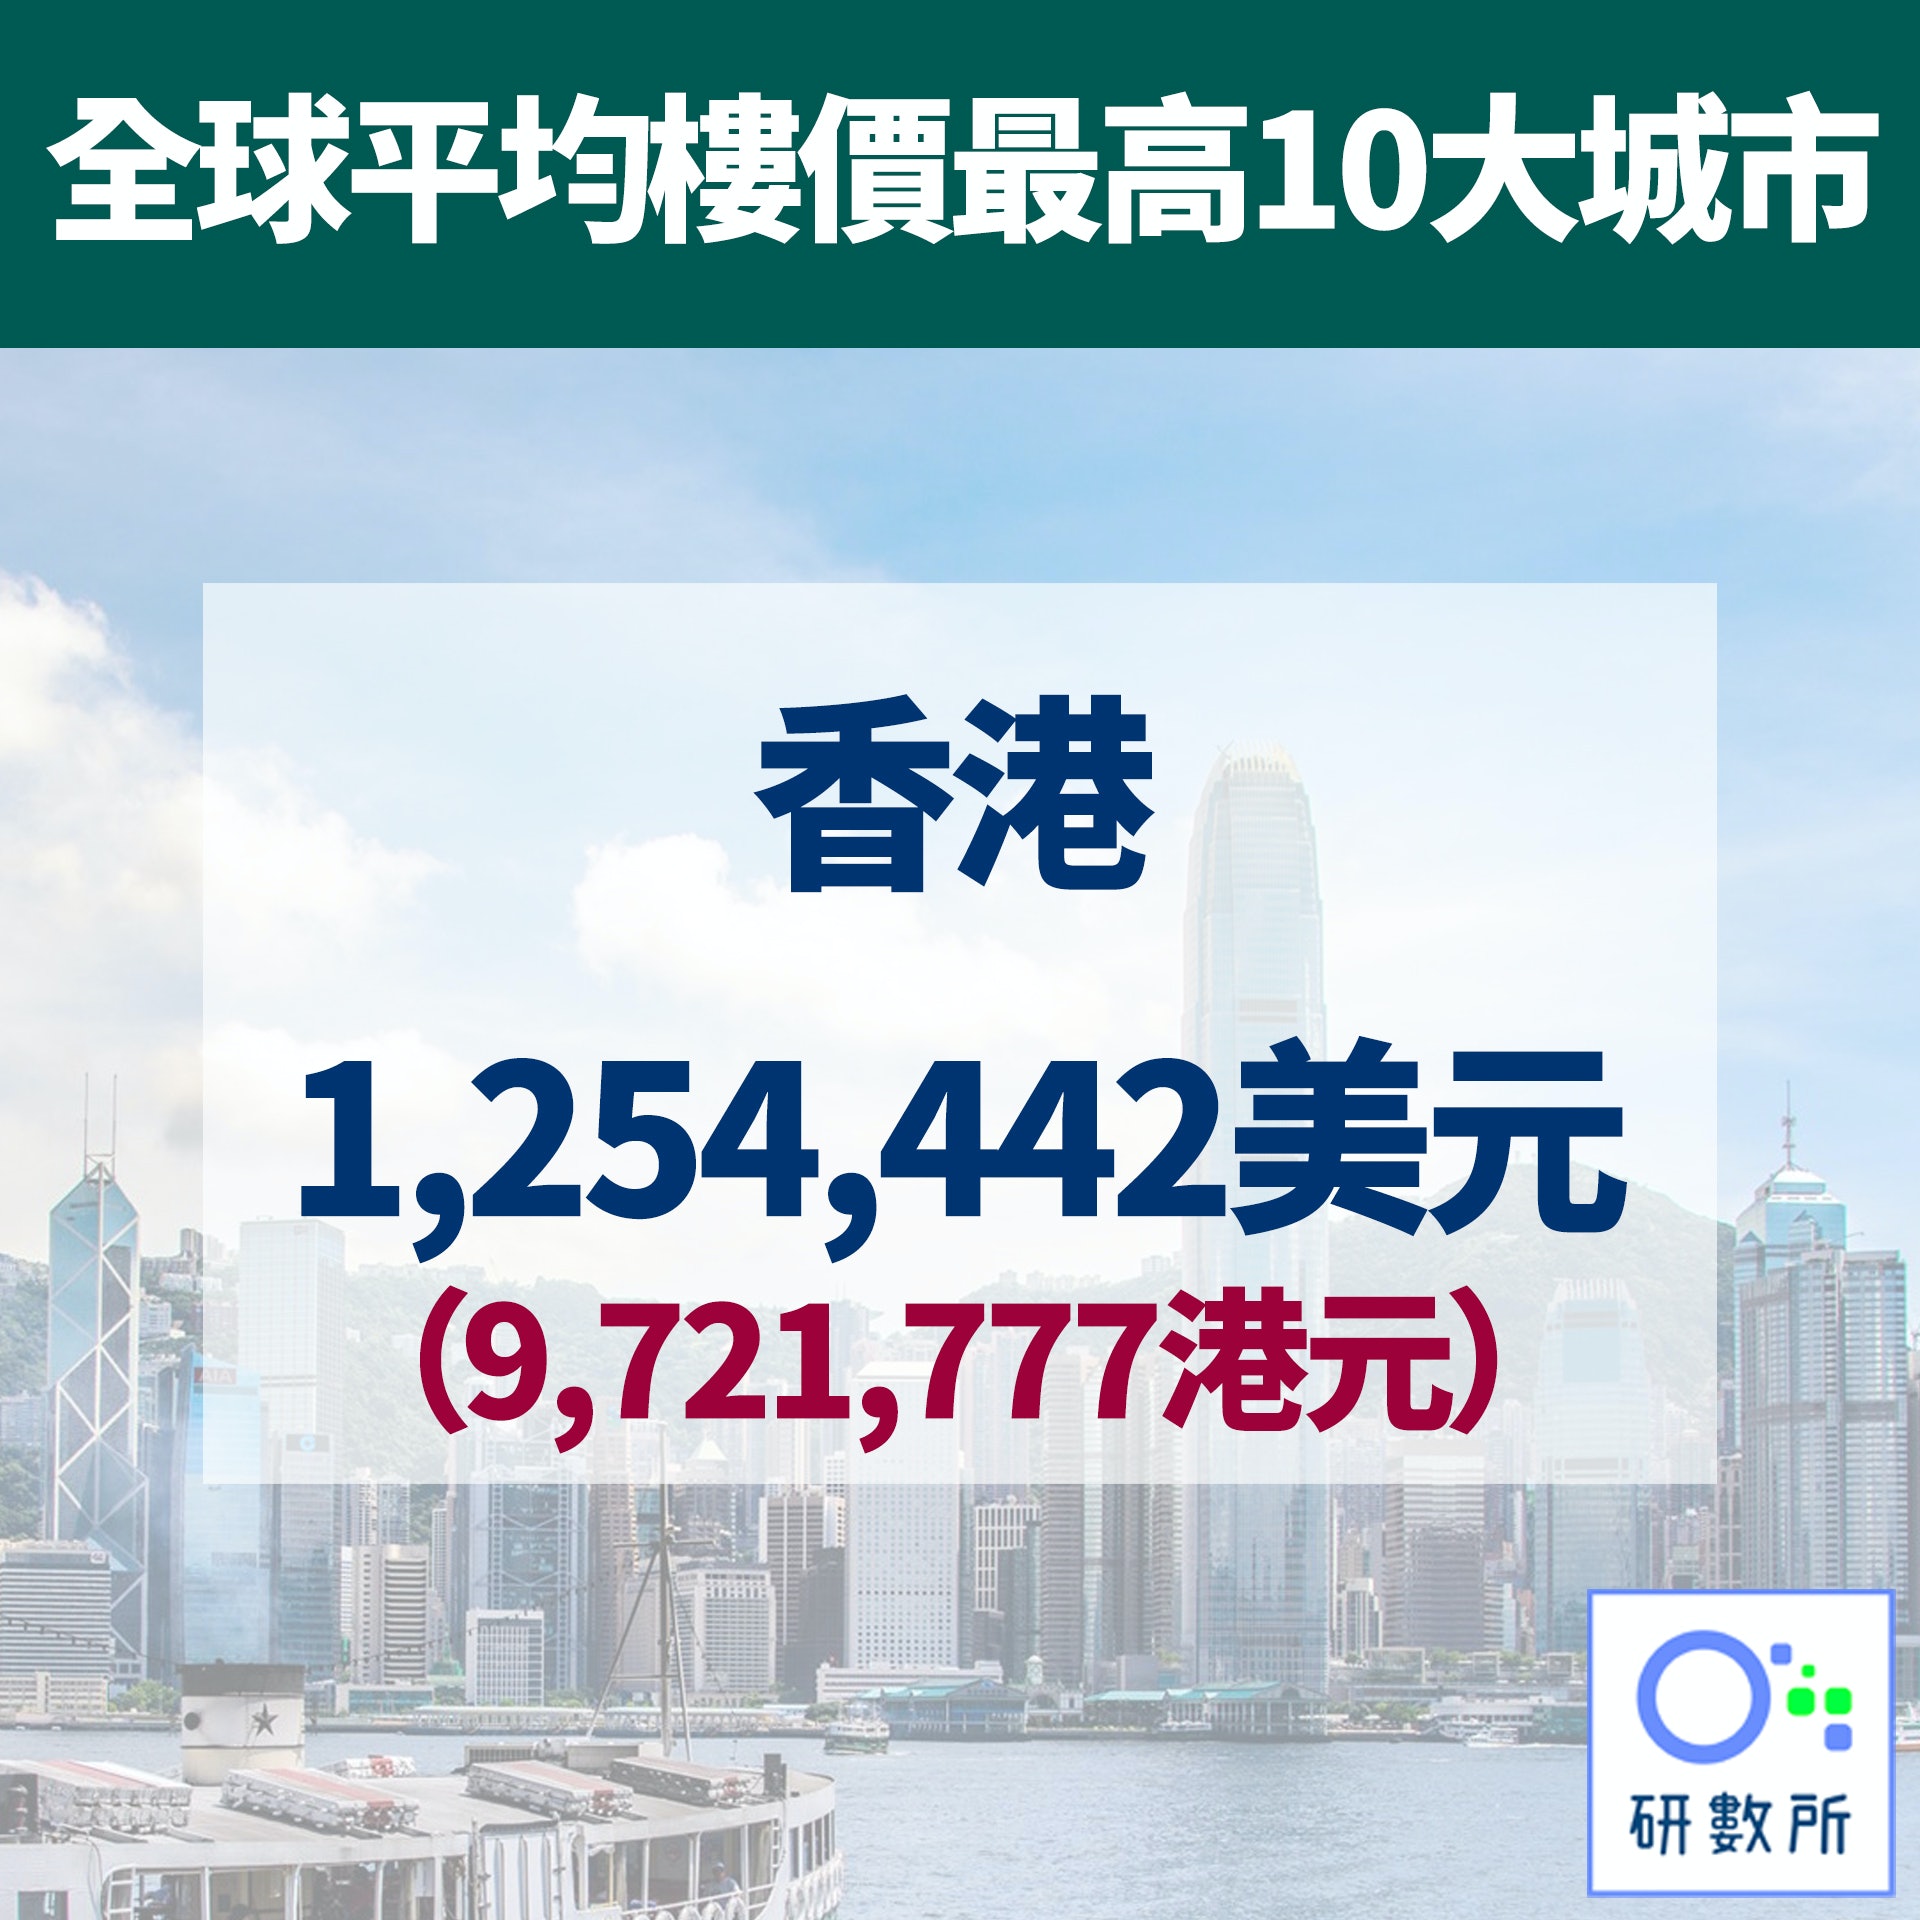 【全球平均樓價最高10大城市】1.香港（路透社／01研數所製圖）